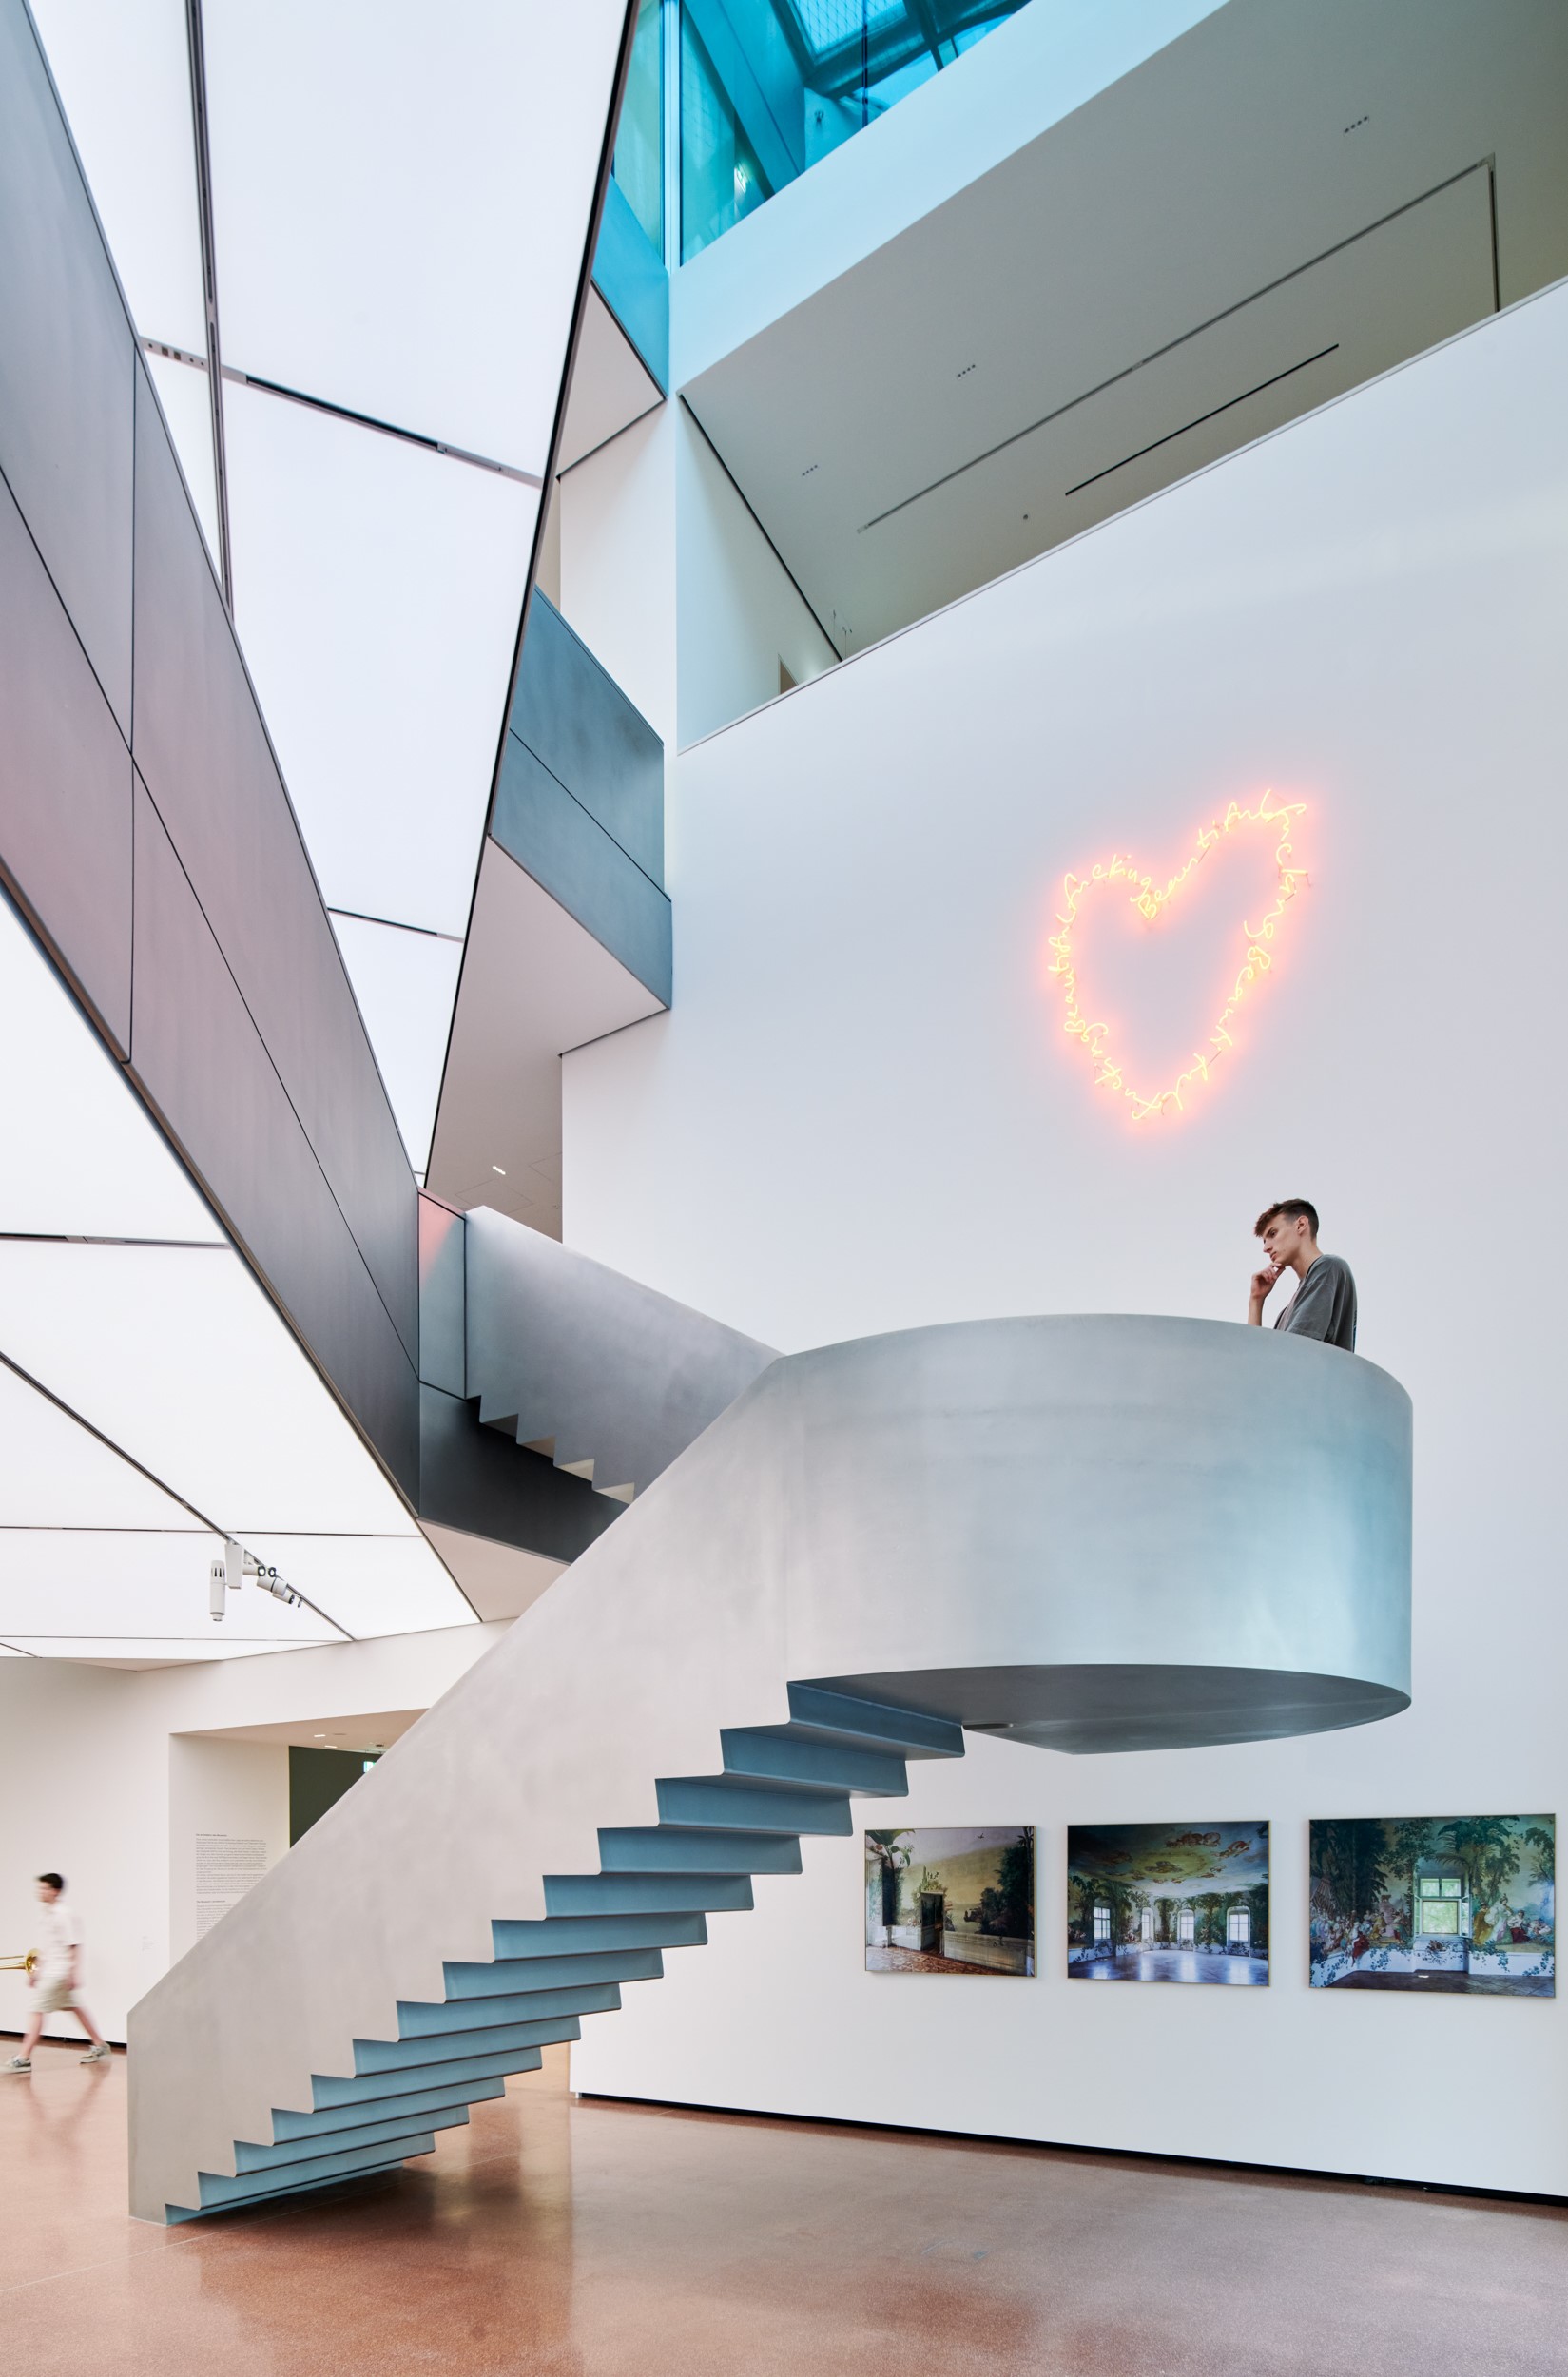 Skulptural ausgebildete Freitreppe aus glasperlgestrahltem Edelstahl verbindet zwei stützfreie Plateaus miteinander.